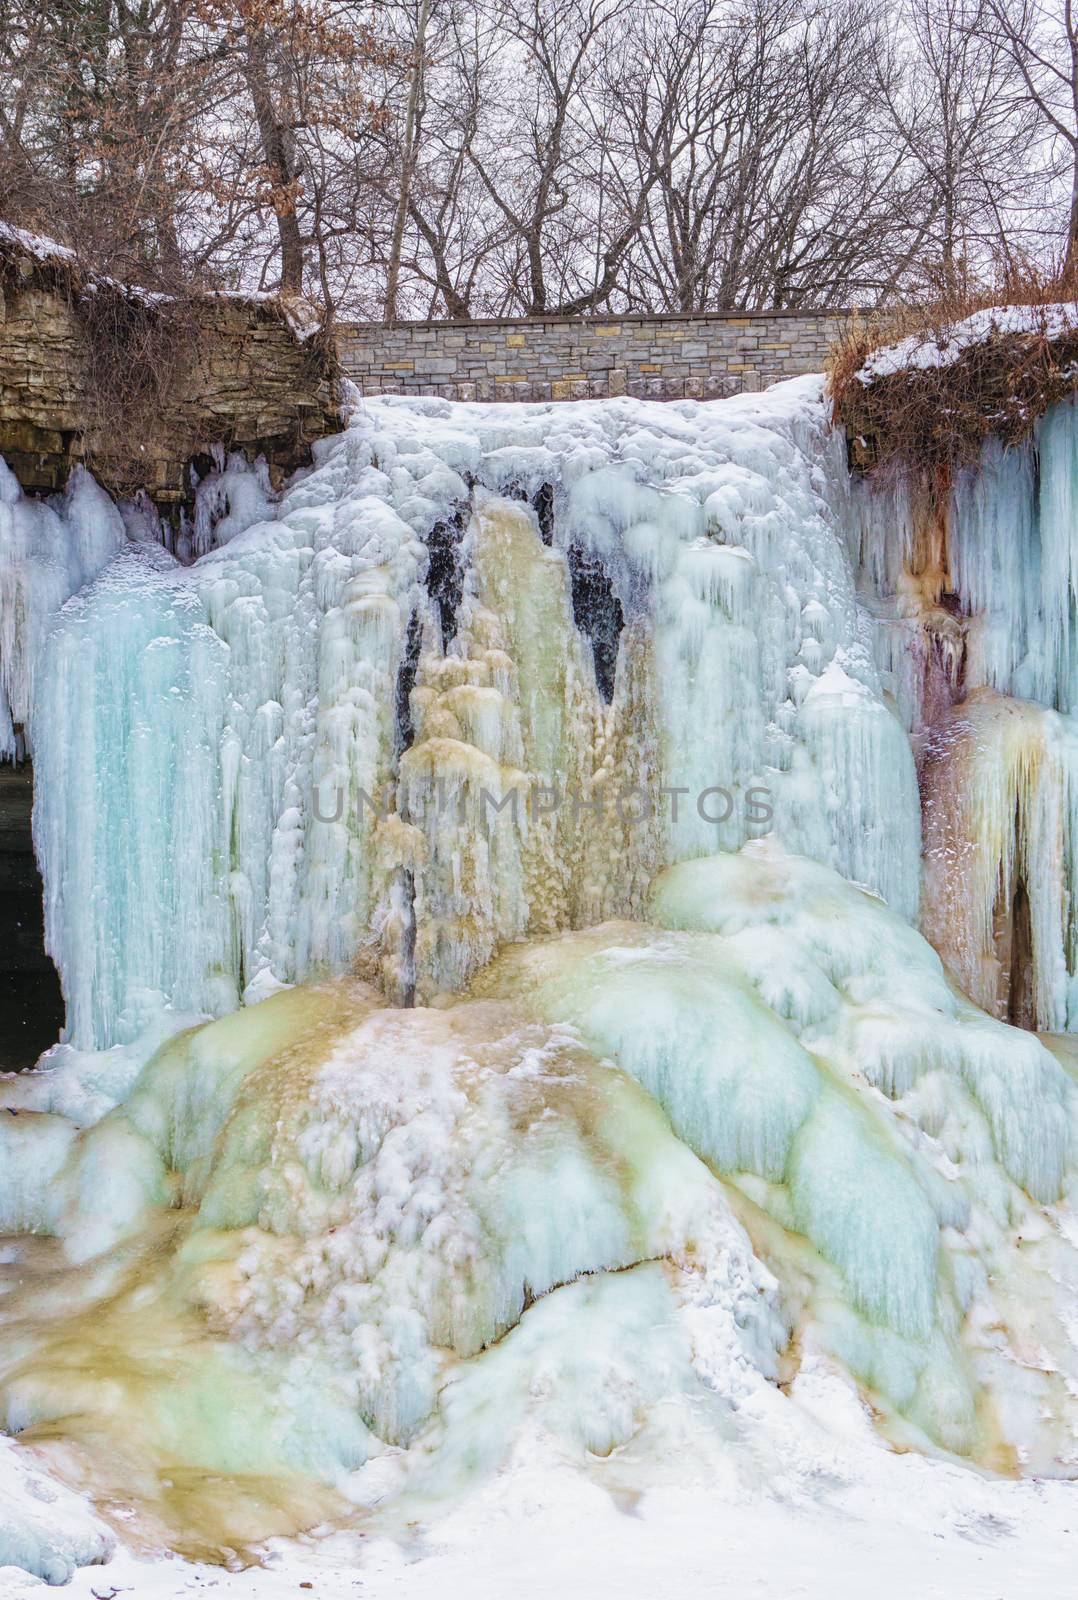 Frozen Minnehaha Falls in Minneapolis, Minnesota